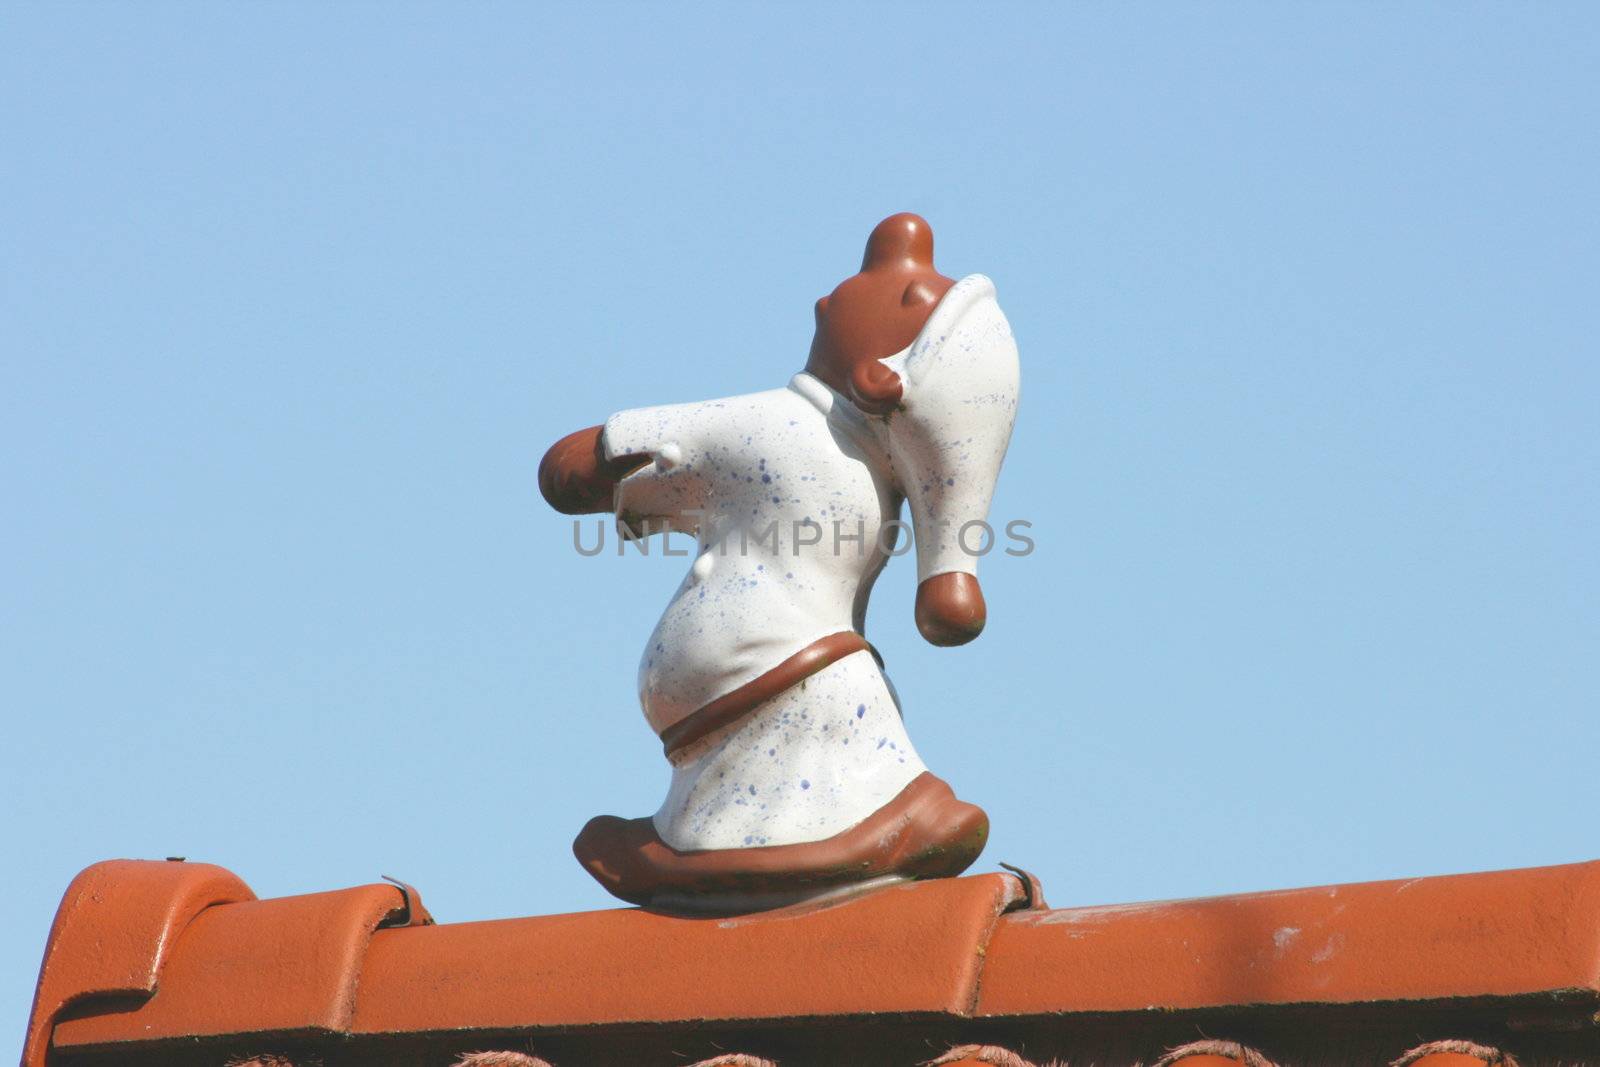 ein aus Ton gefertigter Schlafwandler,auf einem Dachfirst	
which are made of clay sleepwalkers, on a ridge